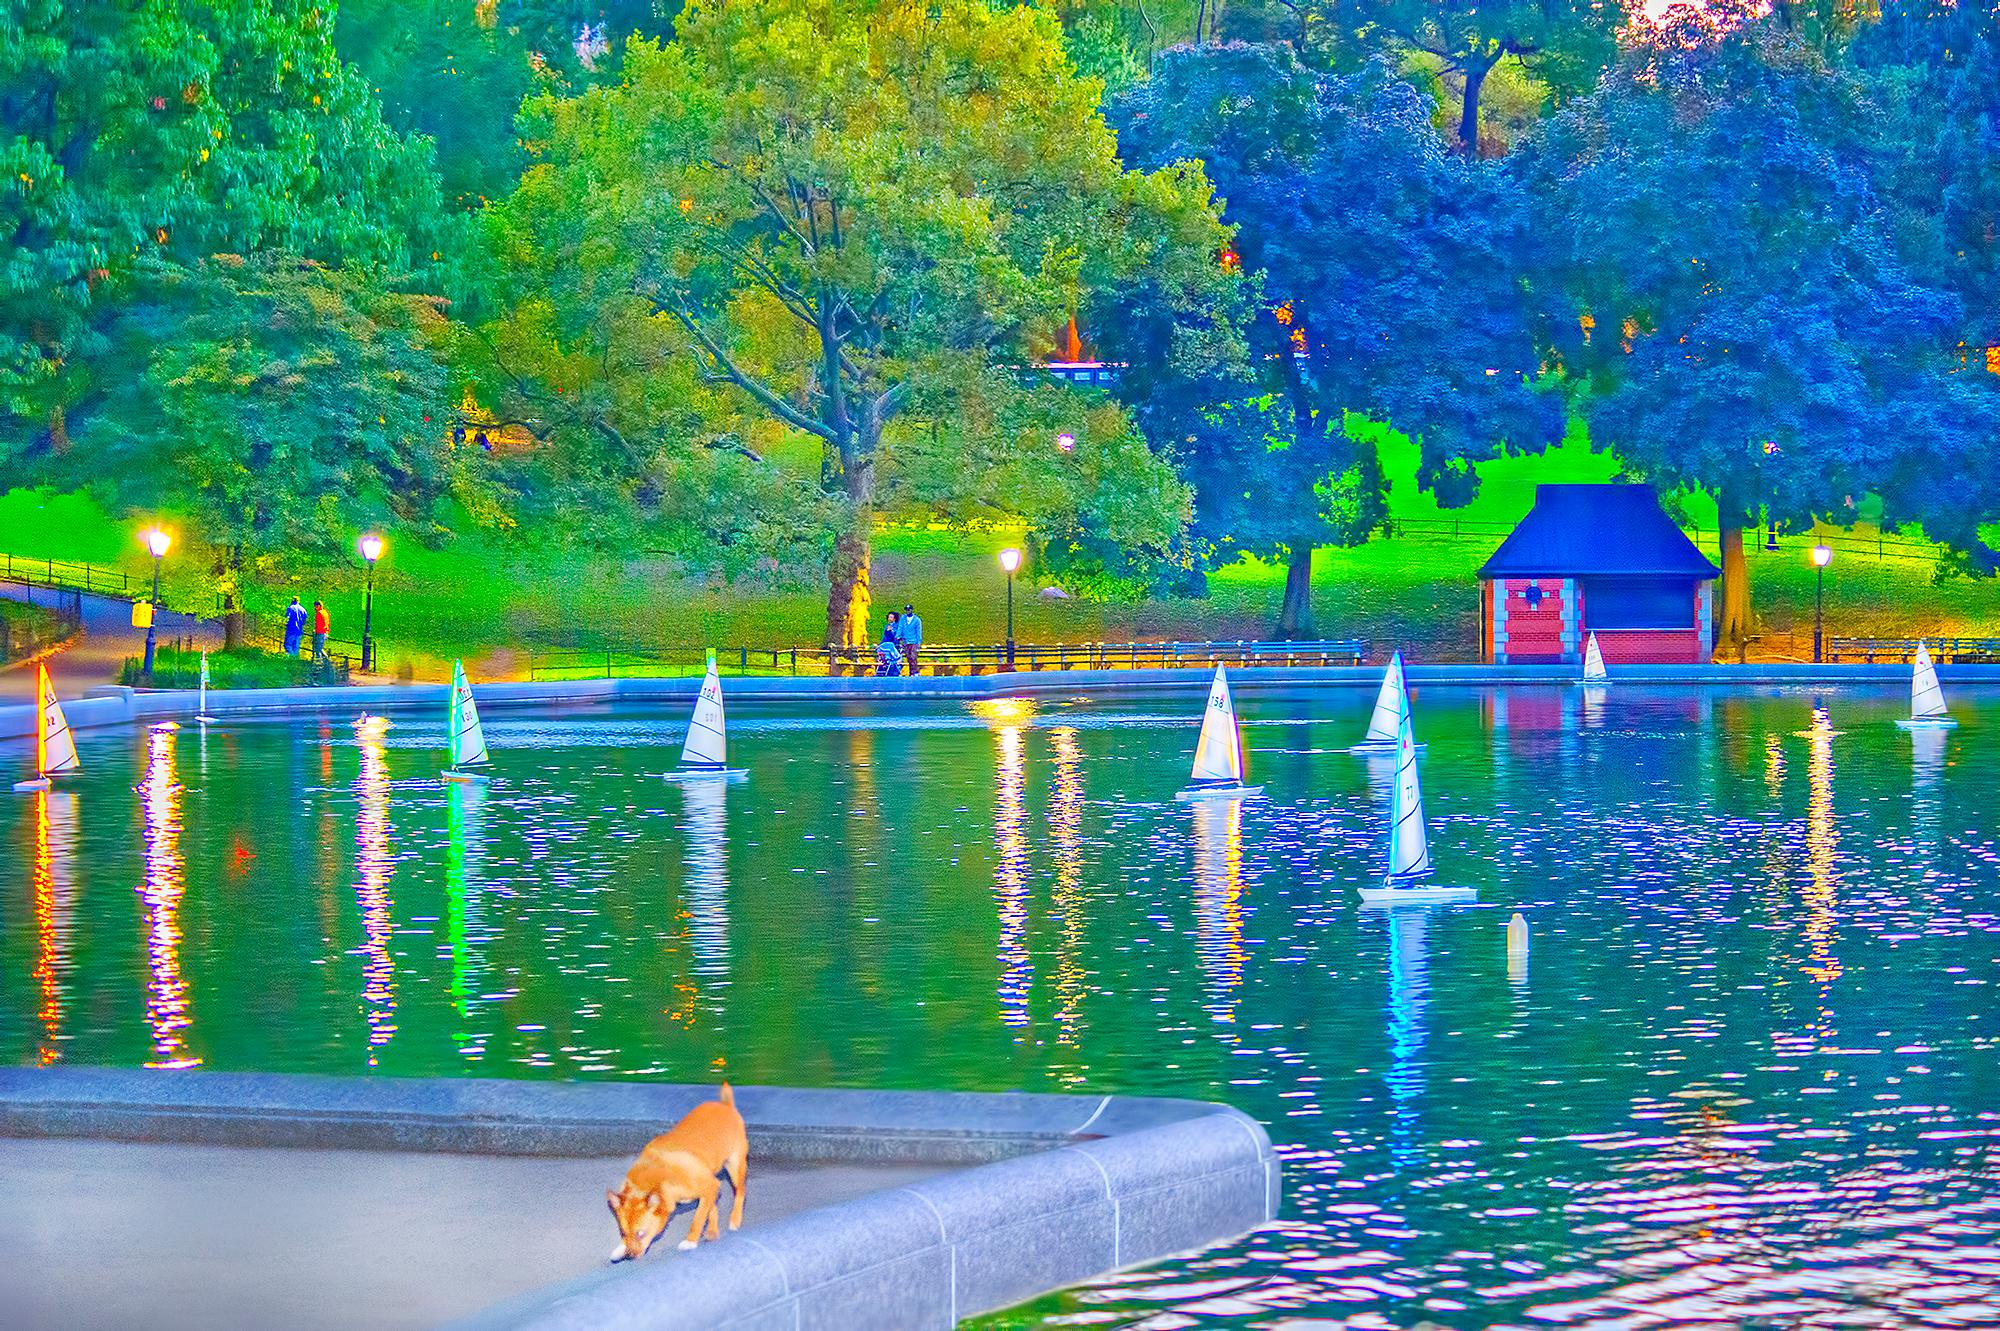 Color Photograph Mitchell Funk - Modèle réduit de voiliers dans l'étang de Central Park Pond, New York